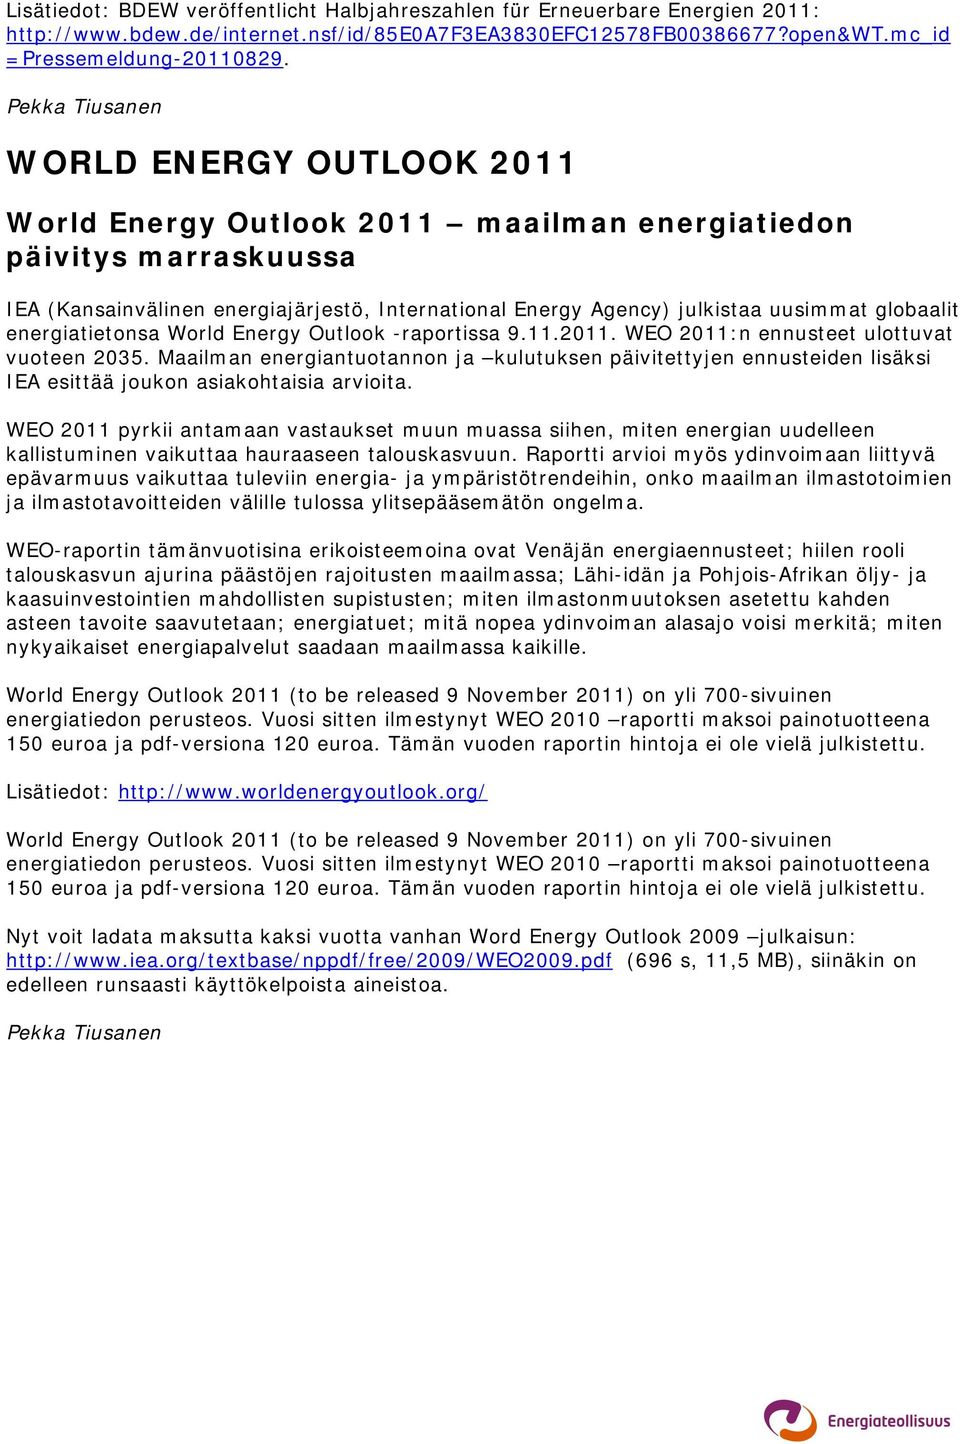 globaalit energiatietonsa World Energy Outlook -raportissa 9.11.2011. WEO 2011:n ennusteet ulottuvat vuoteen 2035.